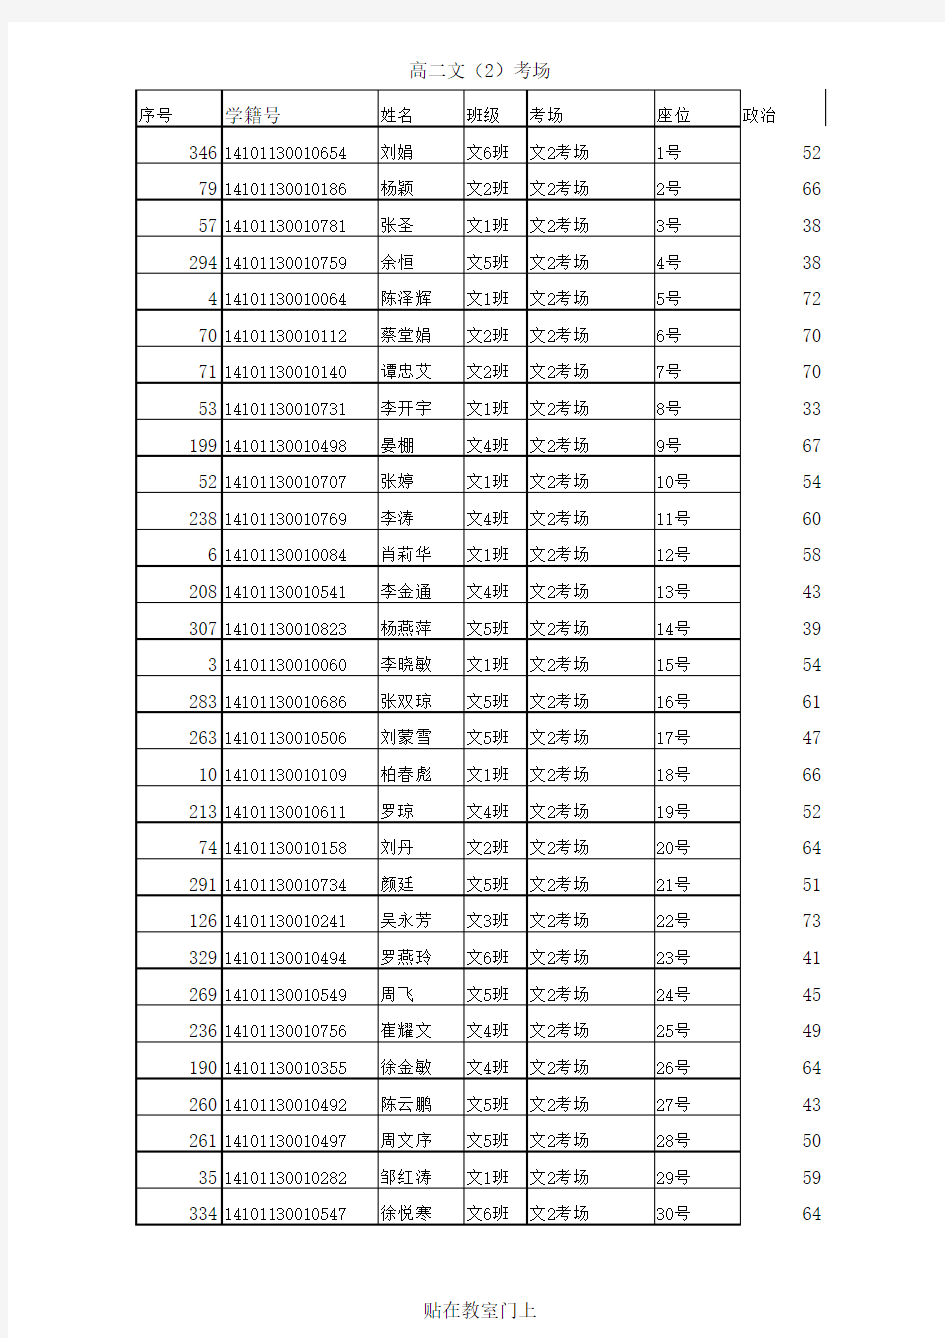 高二期末考试名单(登分表